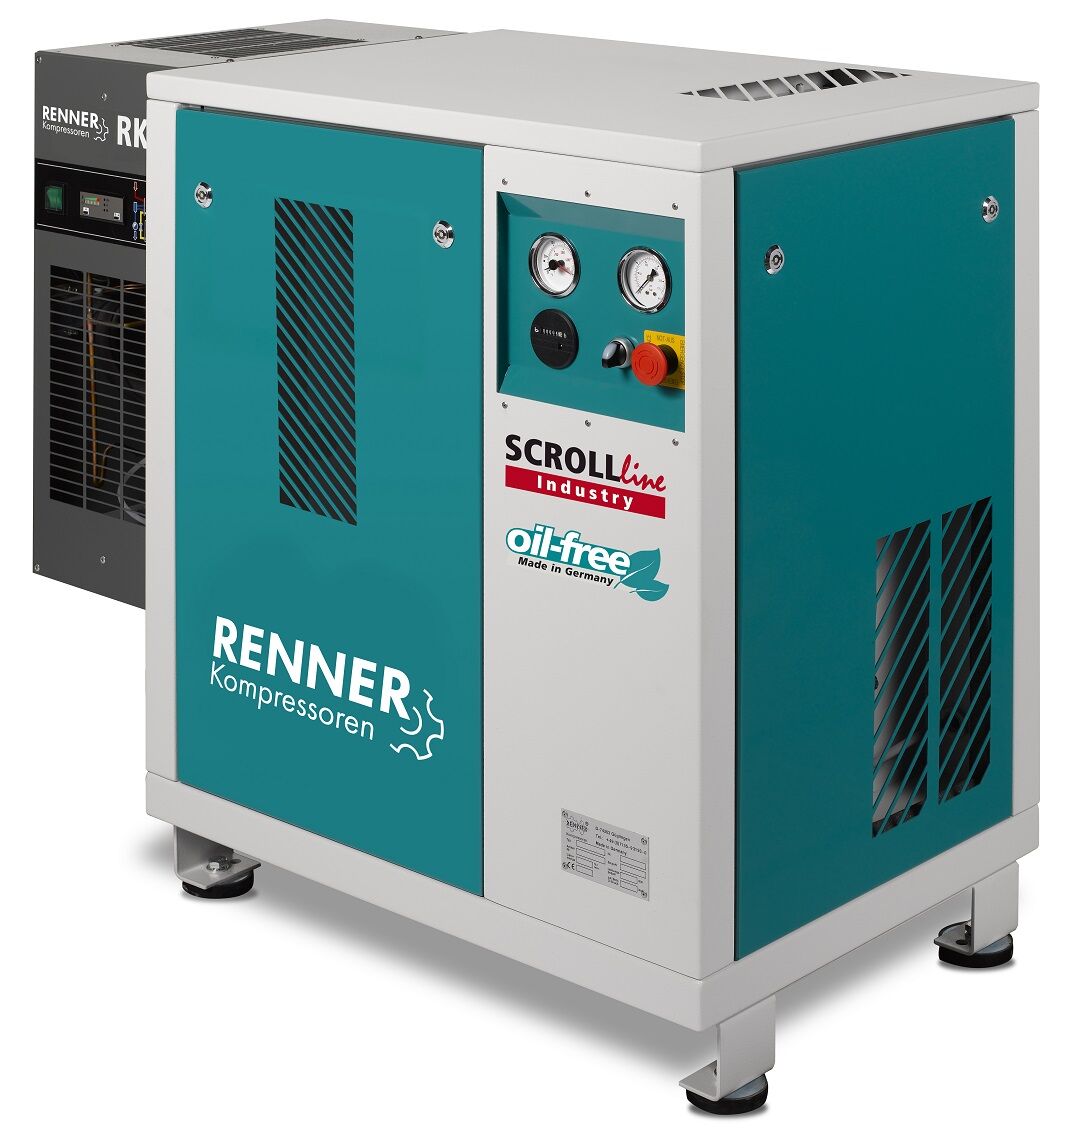 RENNER-Kompressor SLK-I 1,5 mit Kältetrockner - Industry ölfreier Scrollkompressor